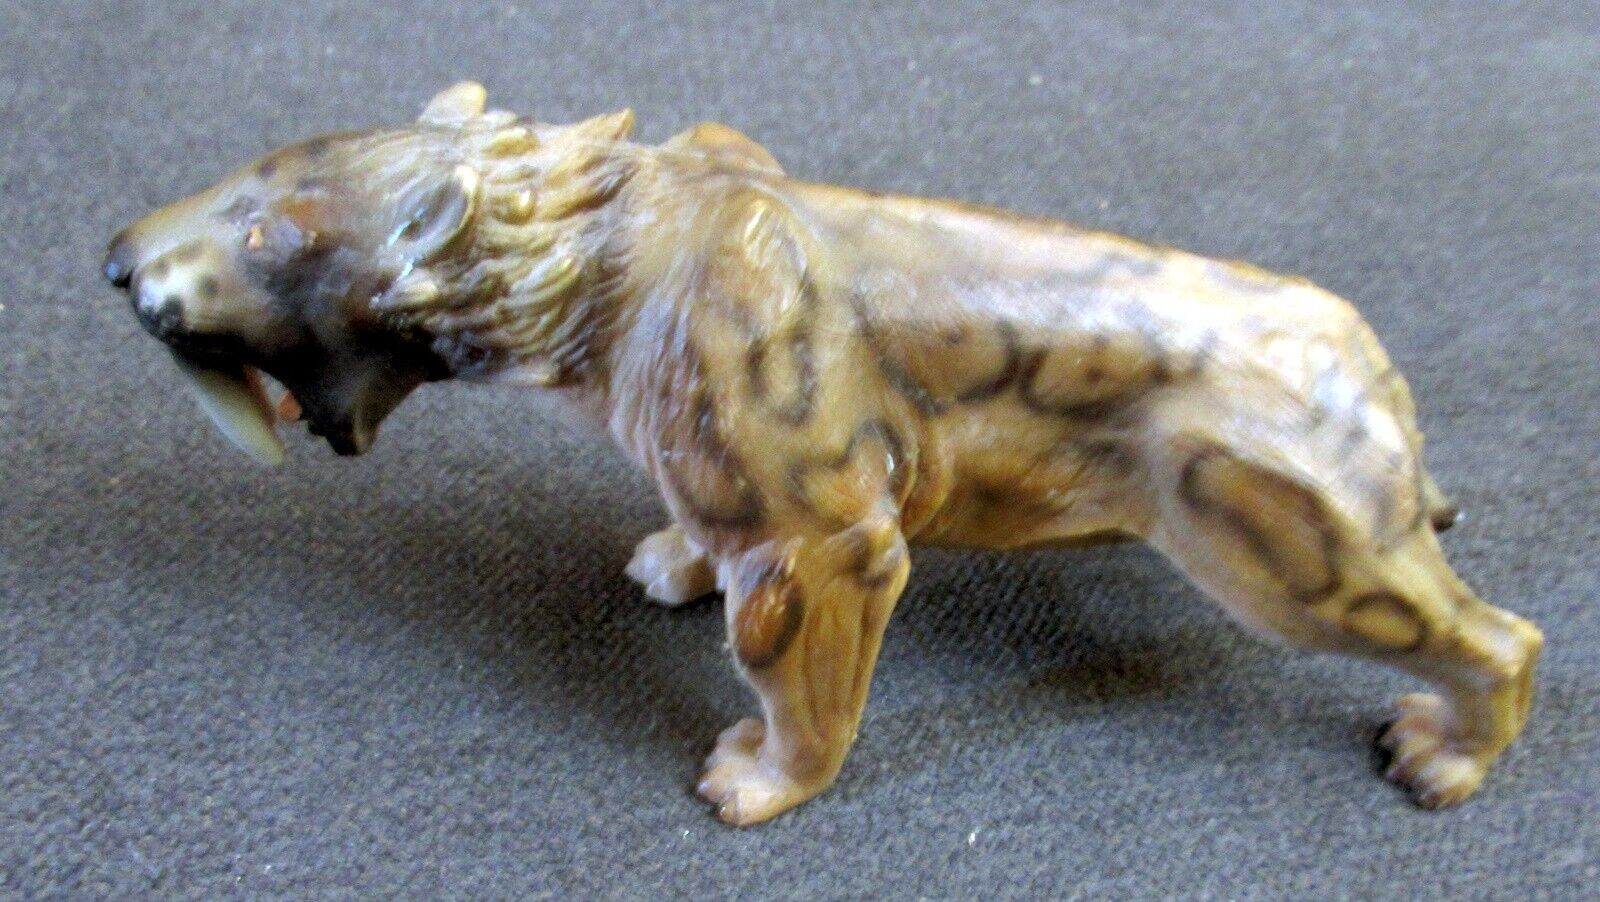 Schleich SMILODON Saber Tooth Tiger 2002 Prehistoric Figure Retired 16520